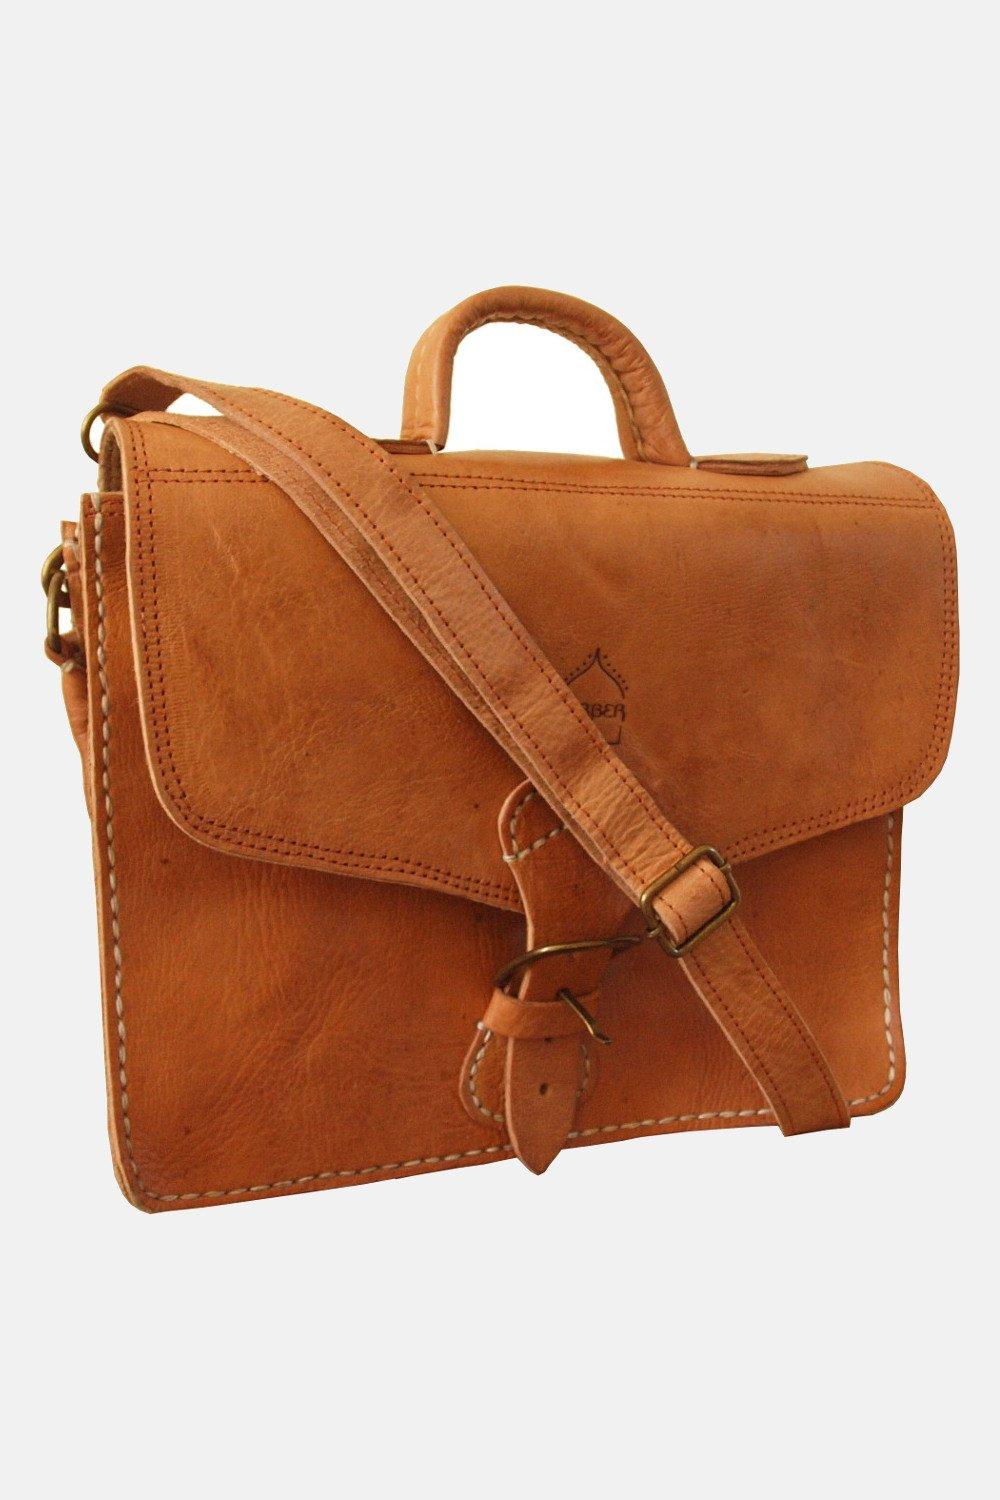 Миниатюрная кожаная сумка The Marrakech Berber Leather, коричневый сумка zara повседневная регулируемый ремень коричневый бежевый